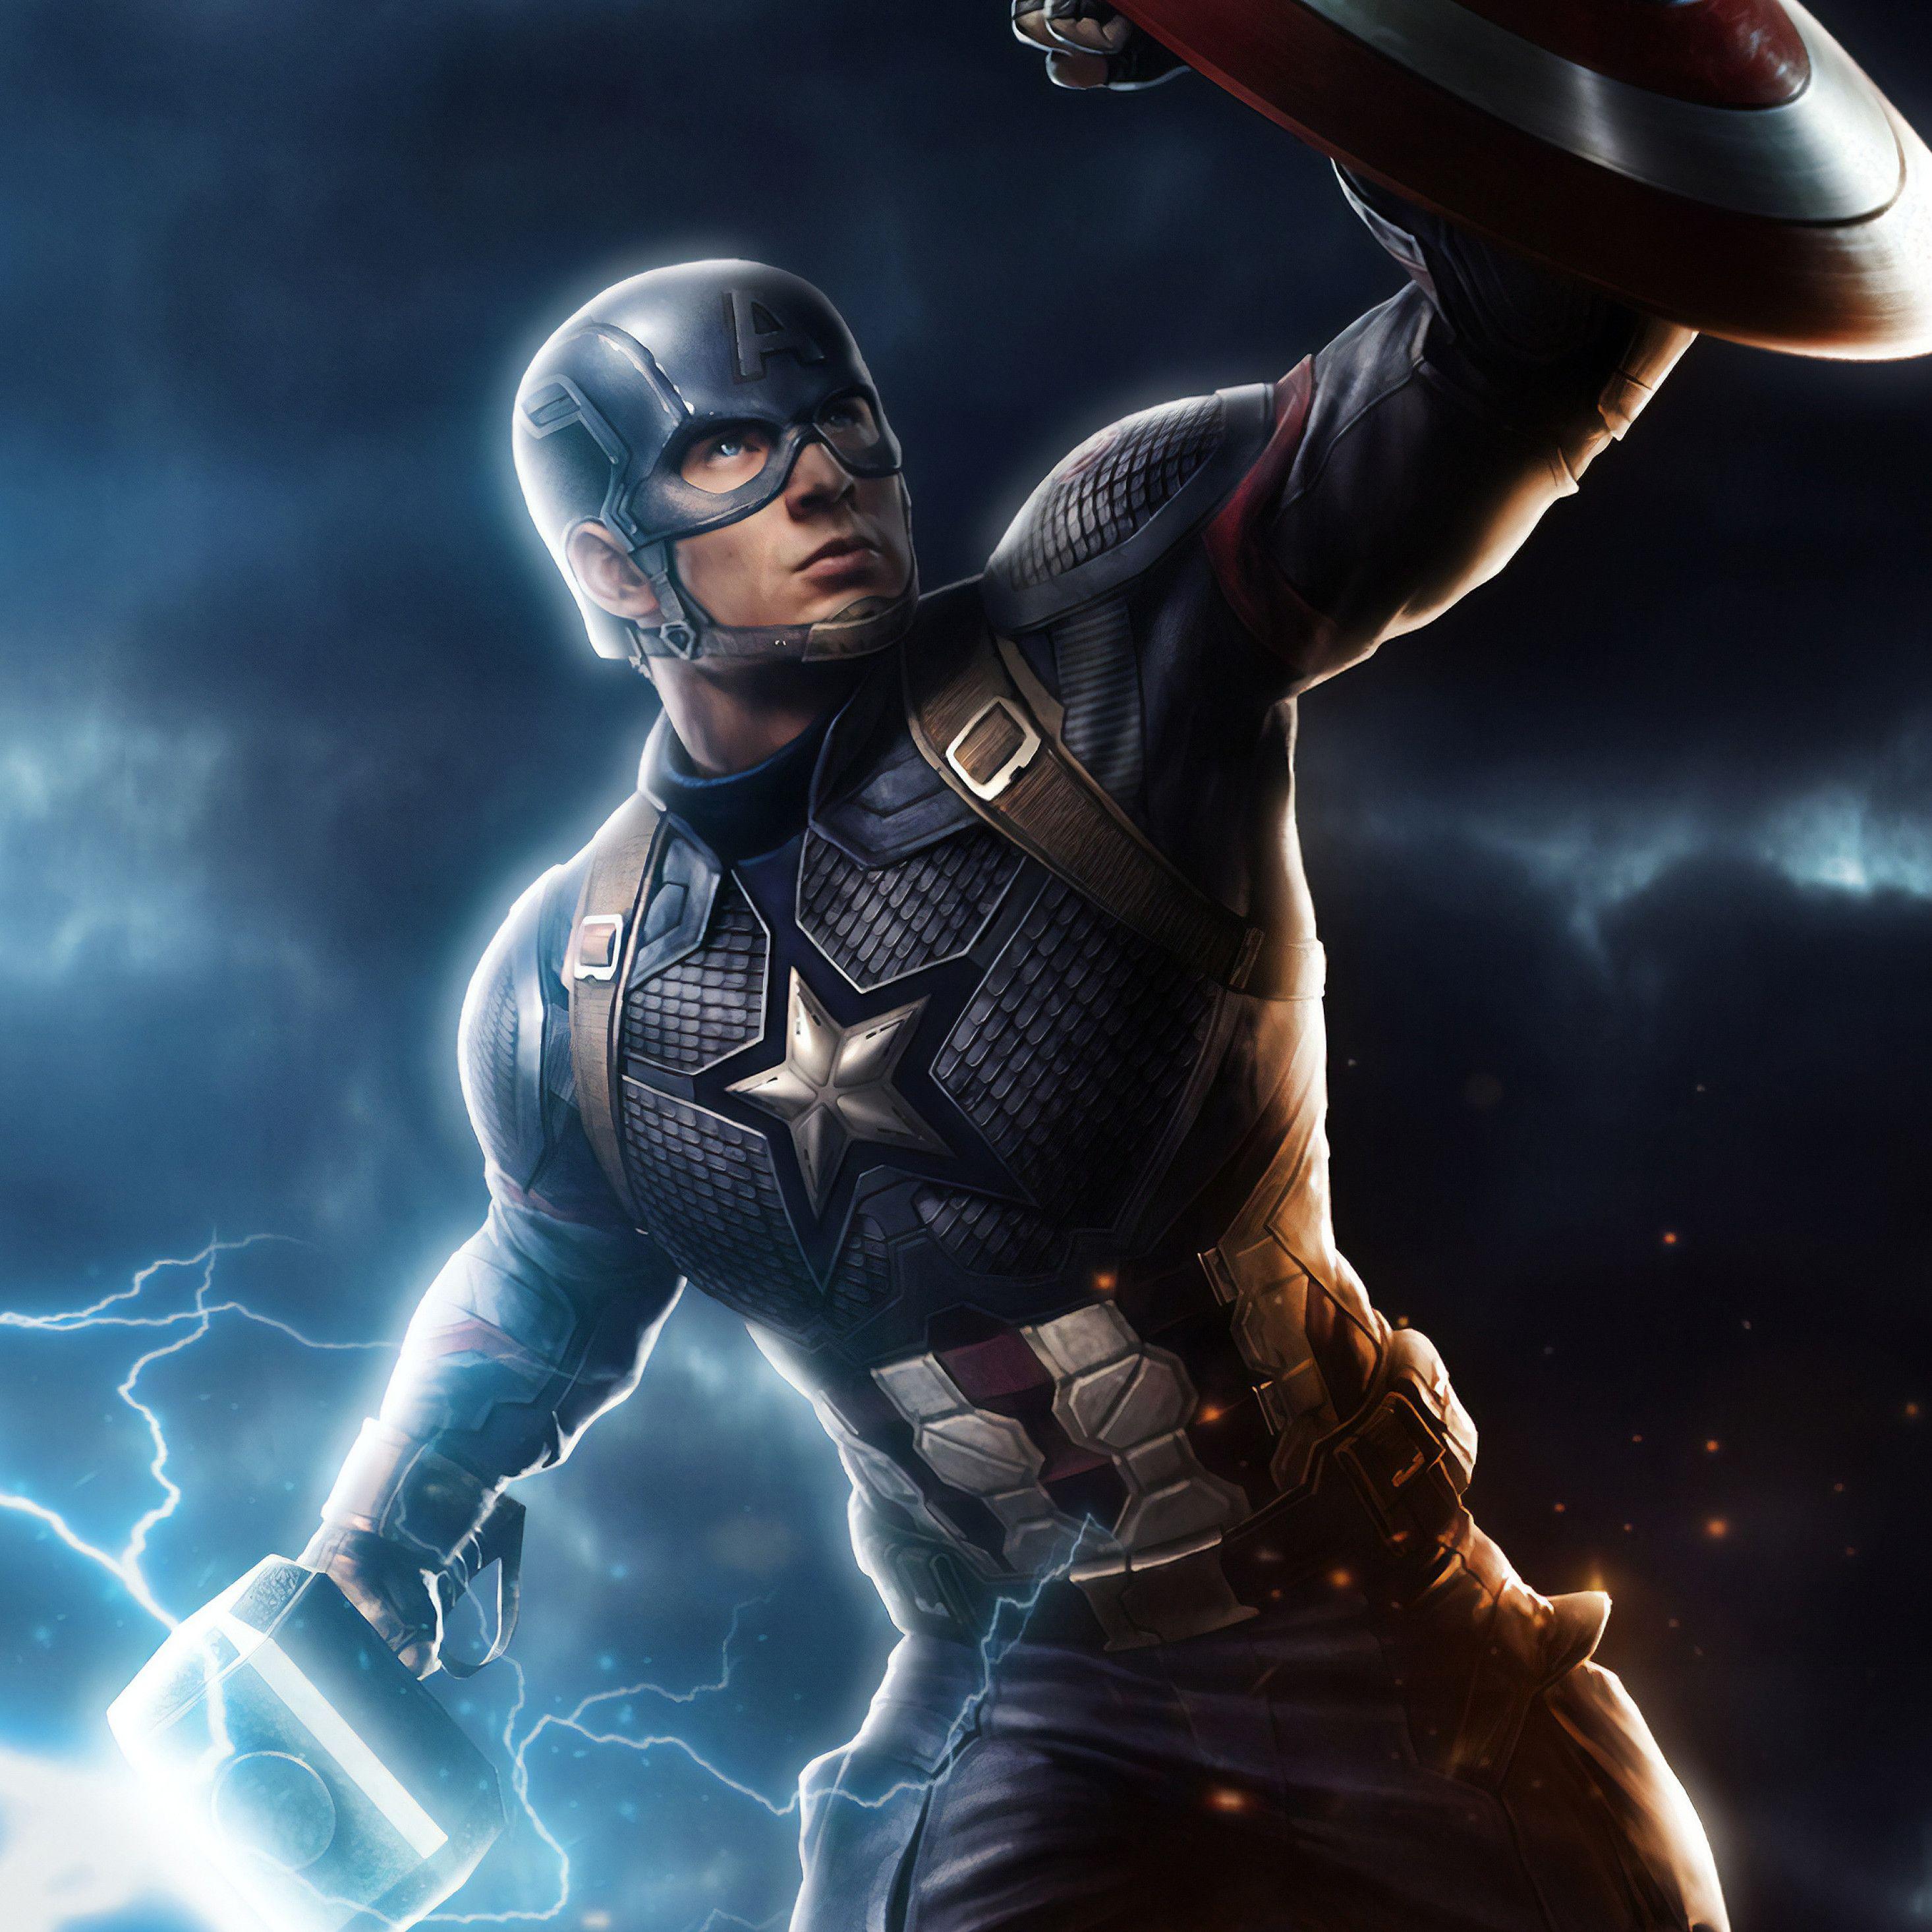 2932x2932 Captain America Mjolnir Avengers Endgame 4k Art iPad Pro